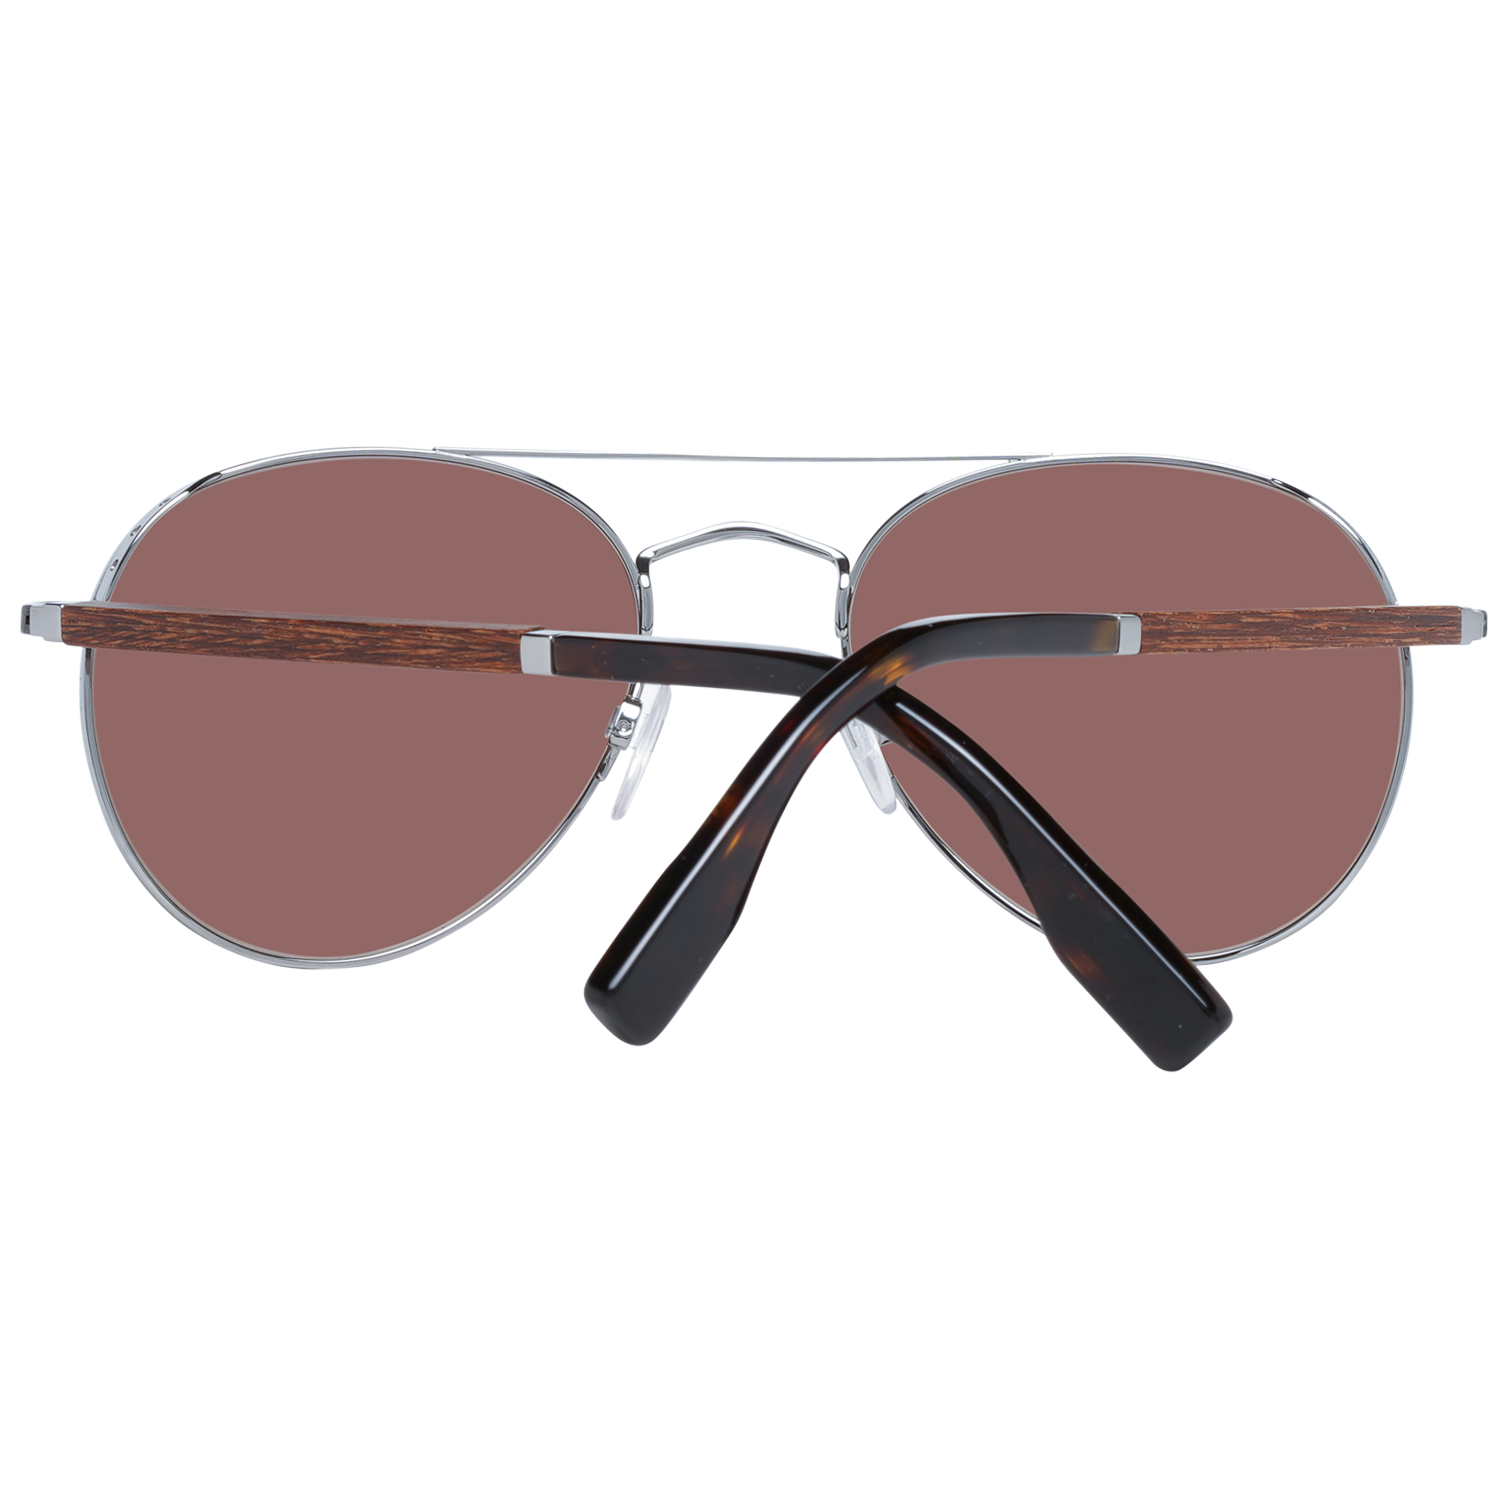 Zegna Couture Gray Men Sunglasses - DEA STILOSA MILANO